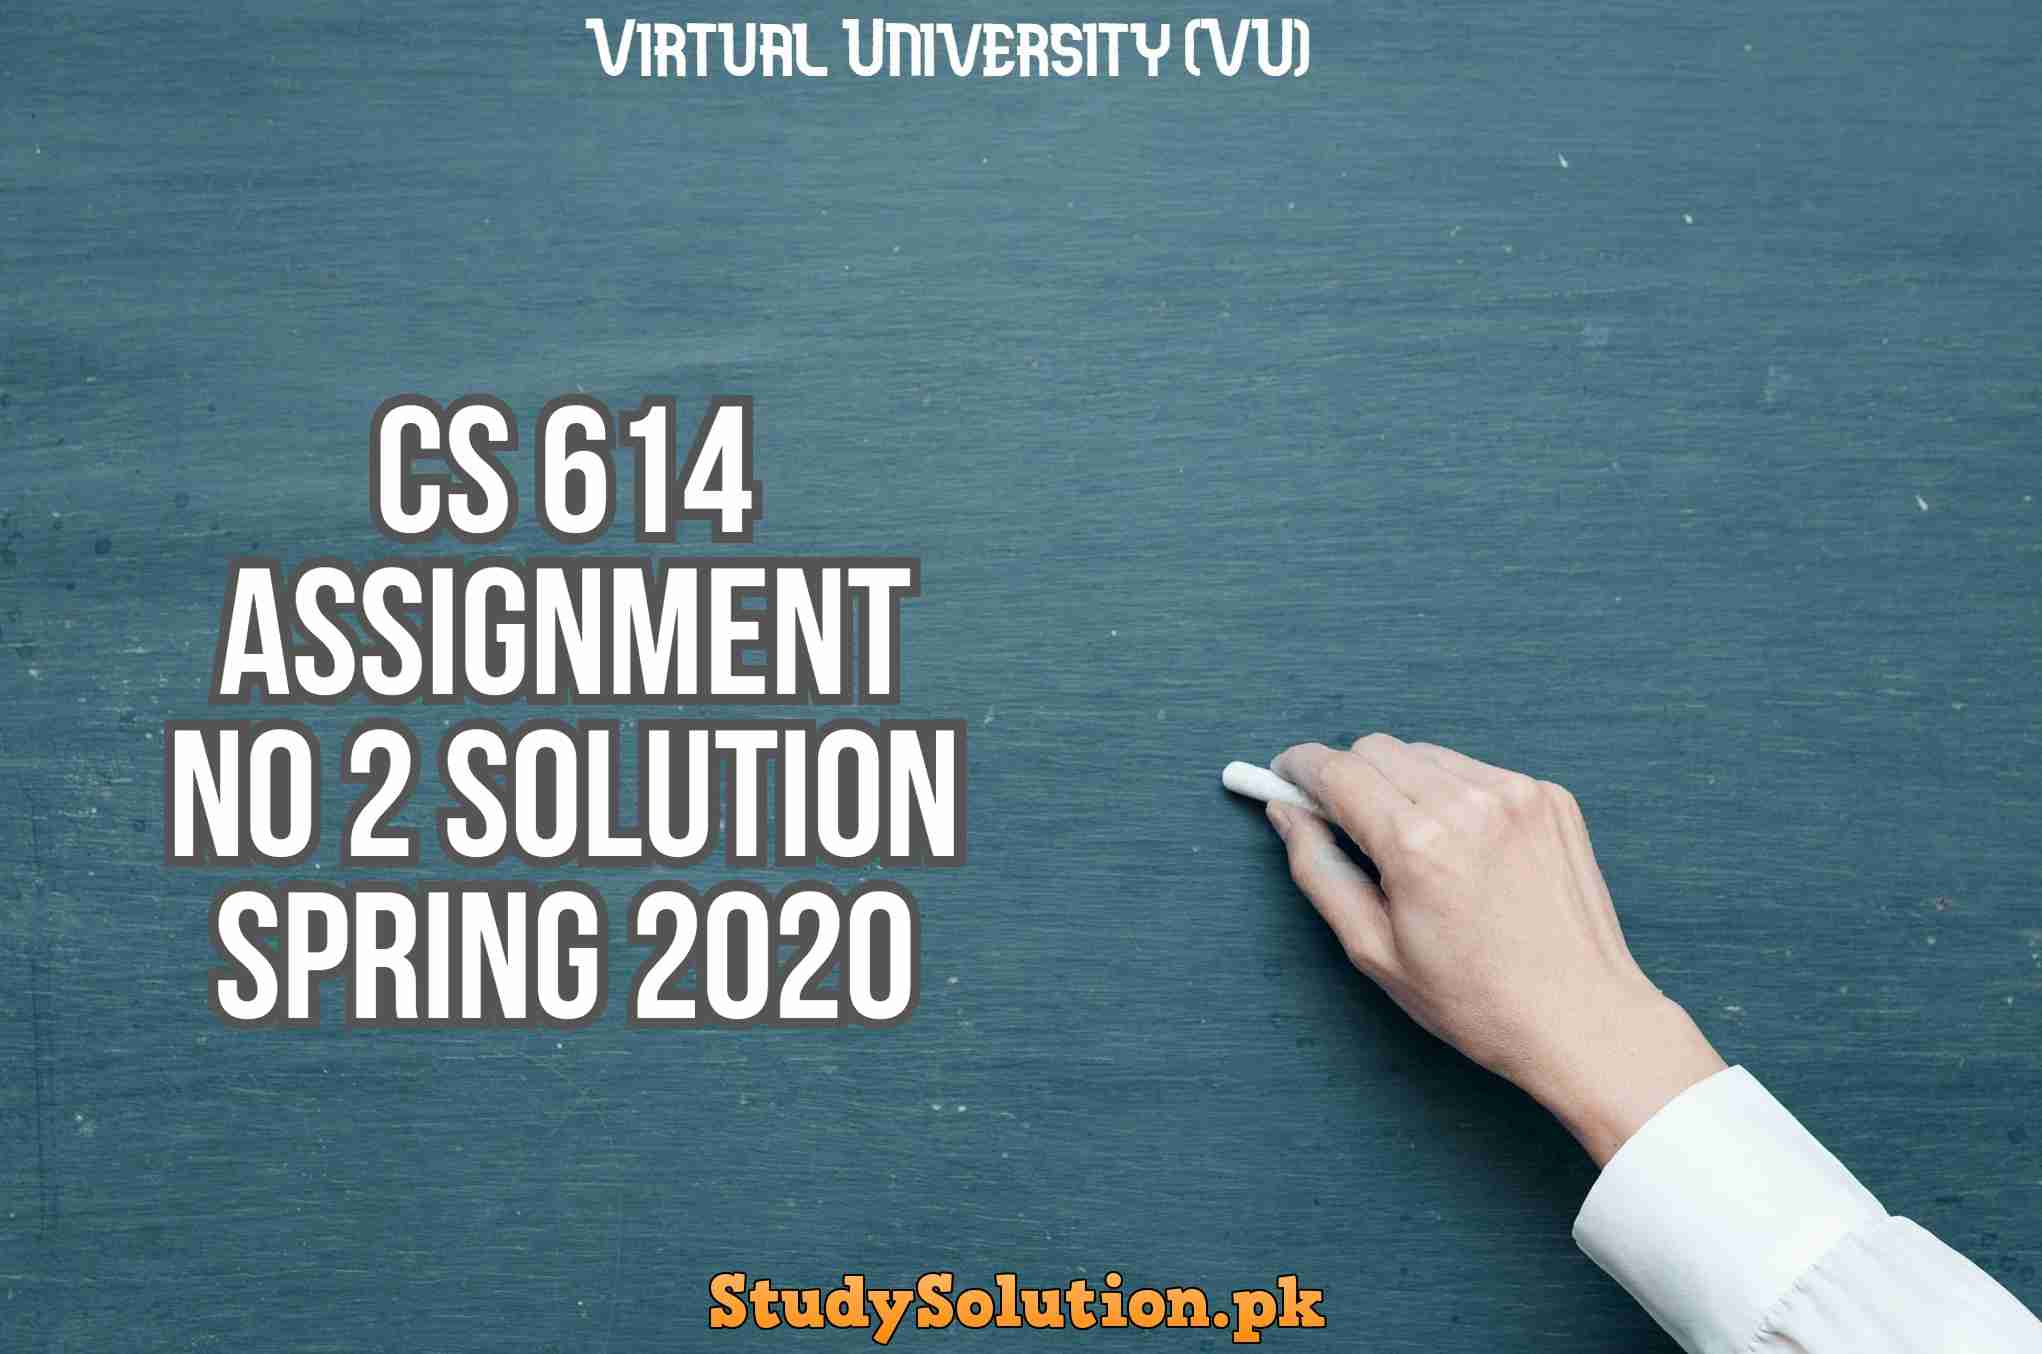 CS 614 Assignment No 2 Solution Spring 2020